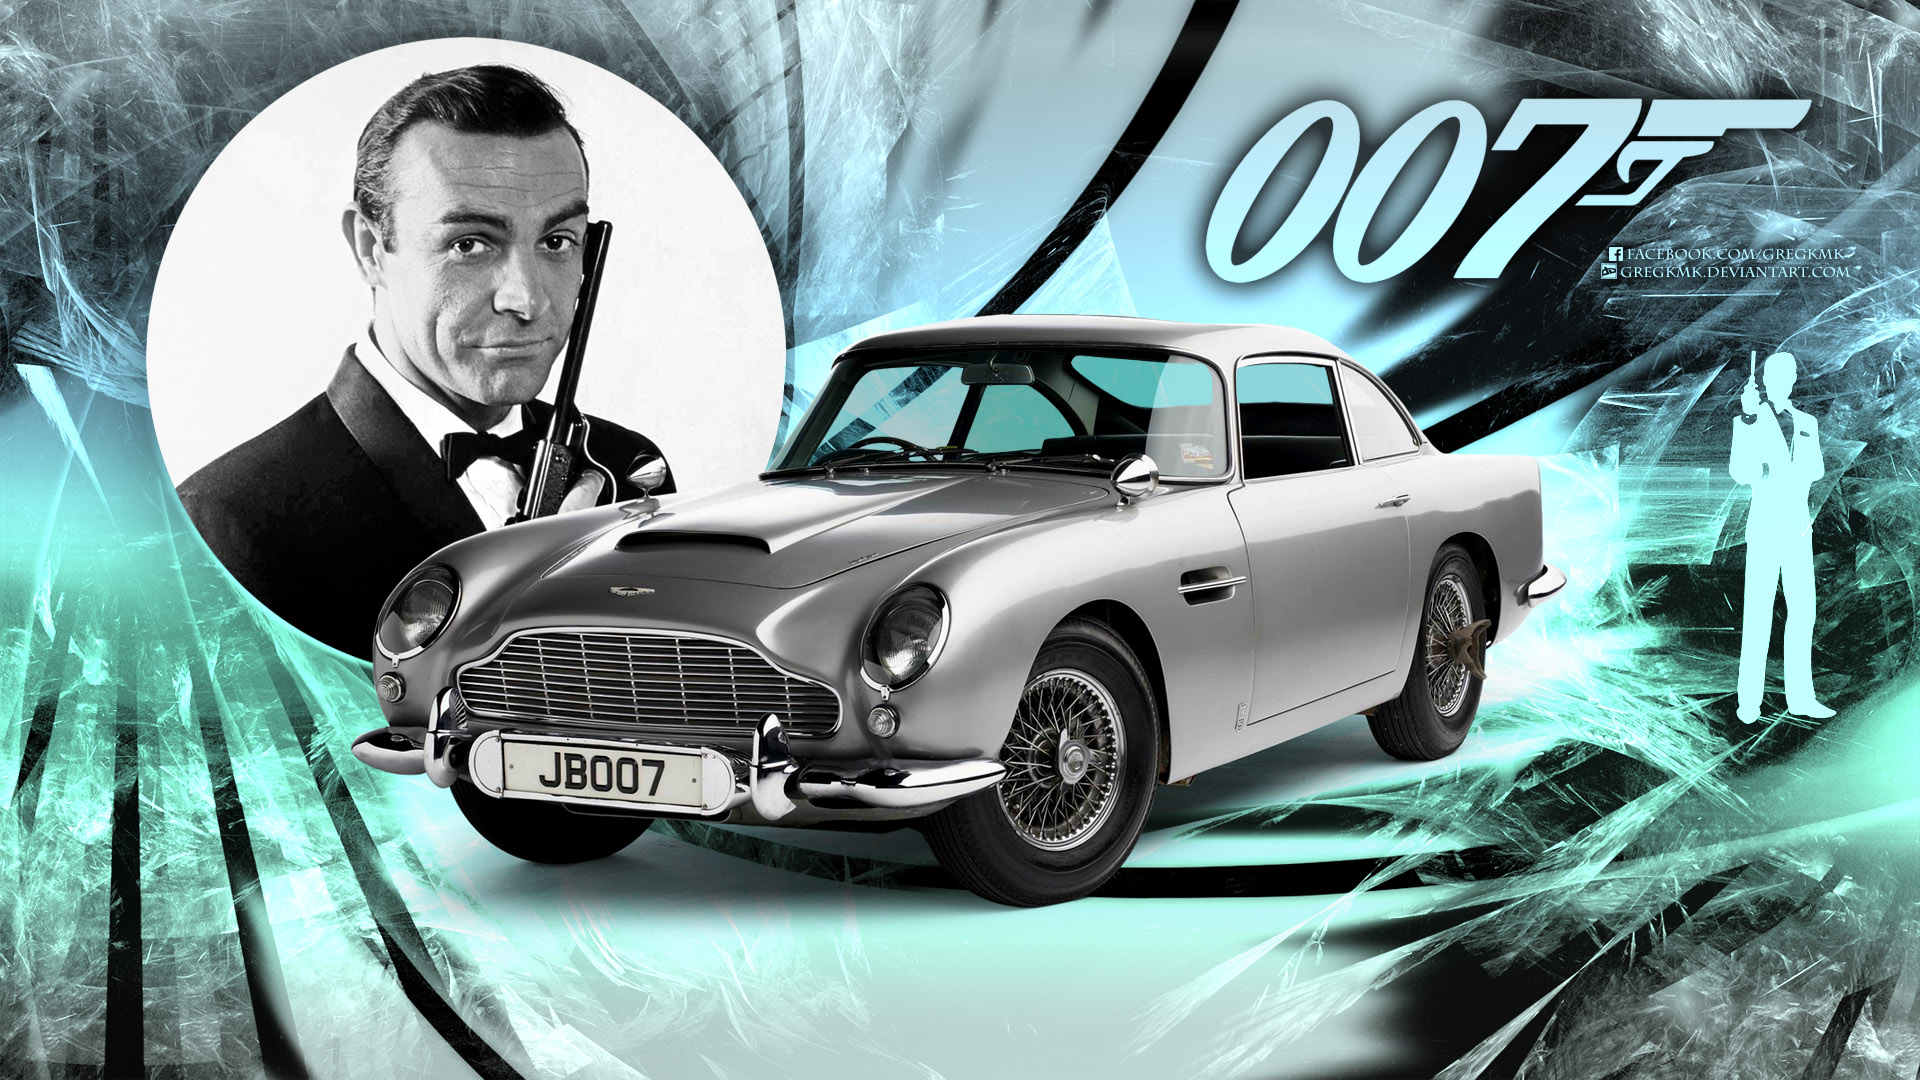 James Bond Wallpaper By Gregkmk Watch Fan Art Movies Tv